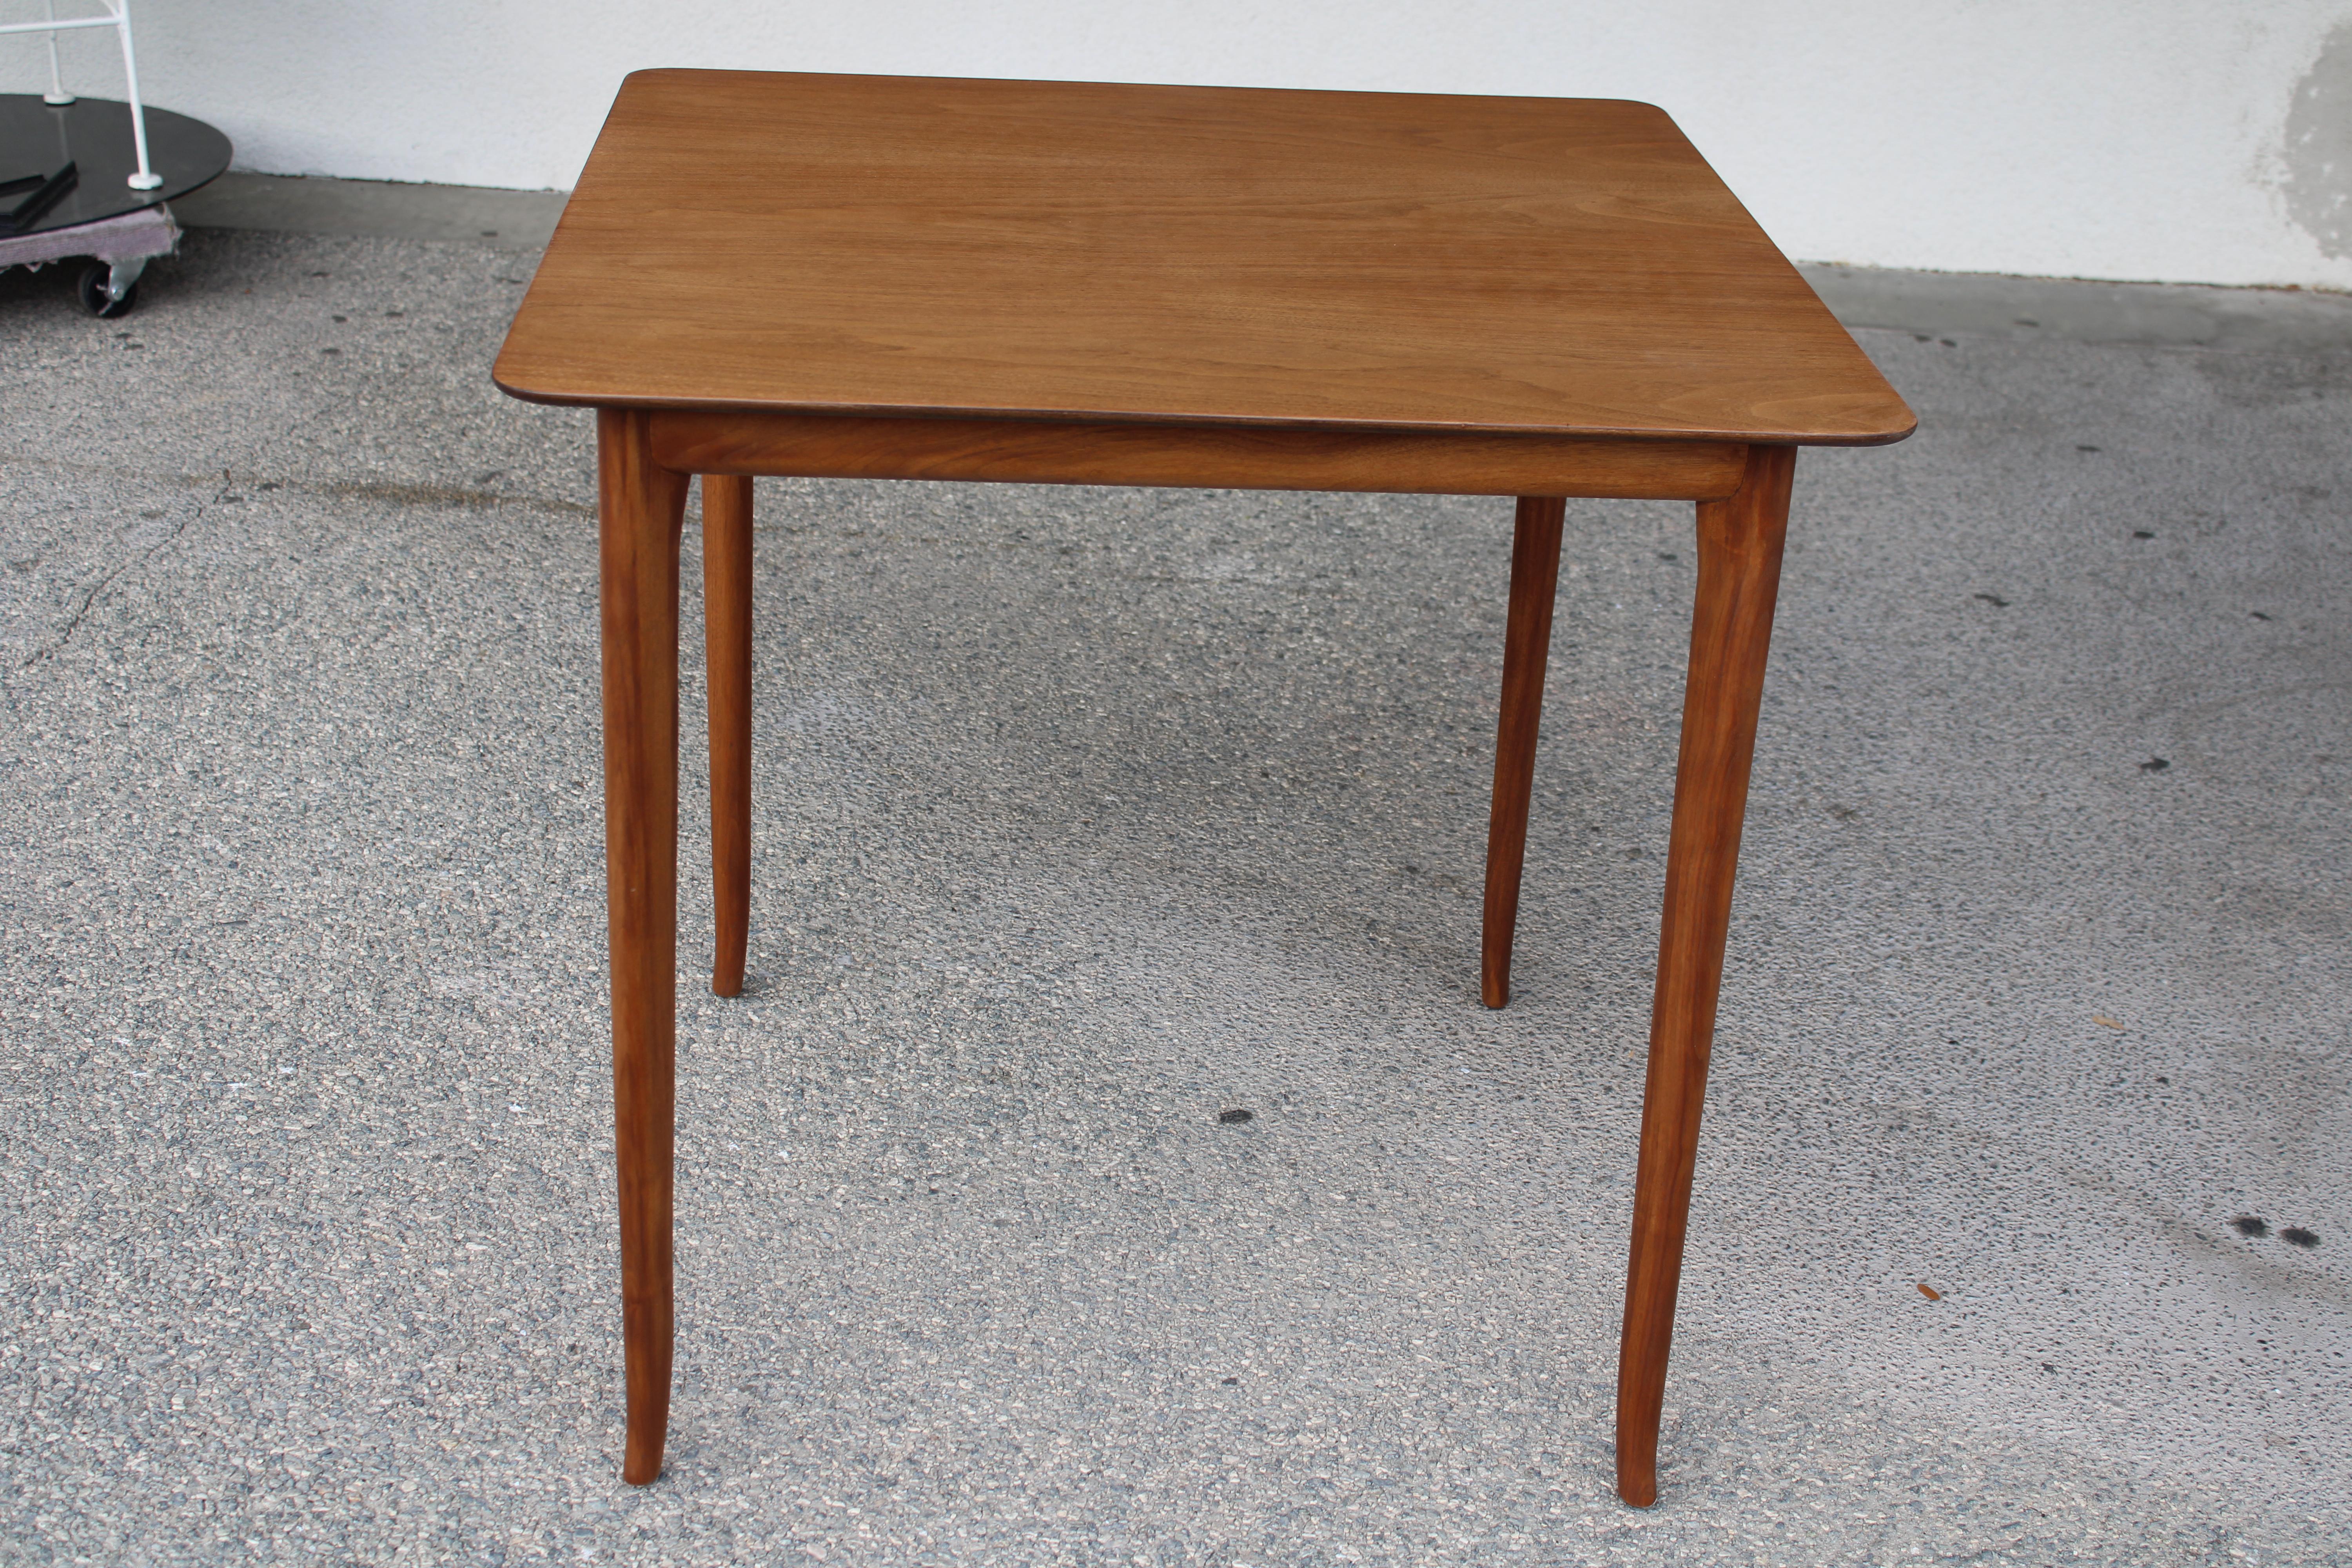 Tisch entworfen von T.H. Robsjohn Gibbings für die Widdicomb Furniture Company. Wir haben den Tisch professionell aufarbeiten lassen. Der Tisch ist 30